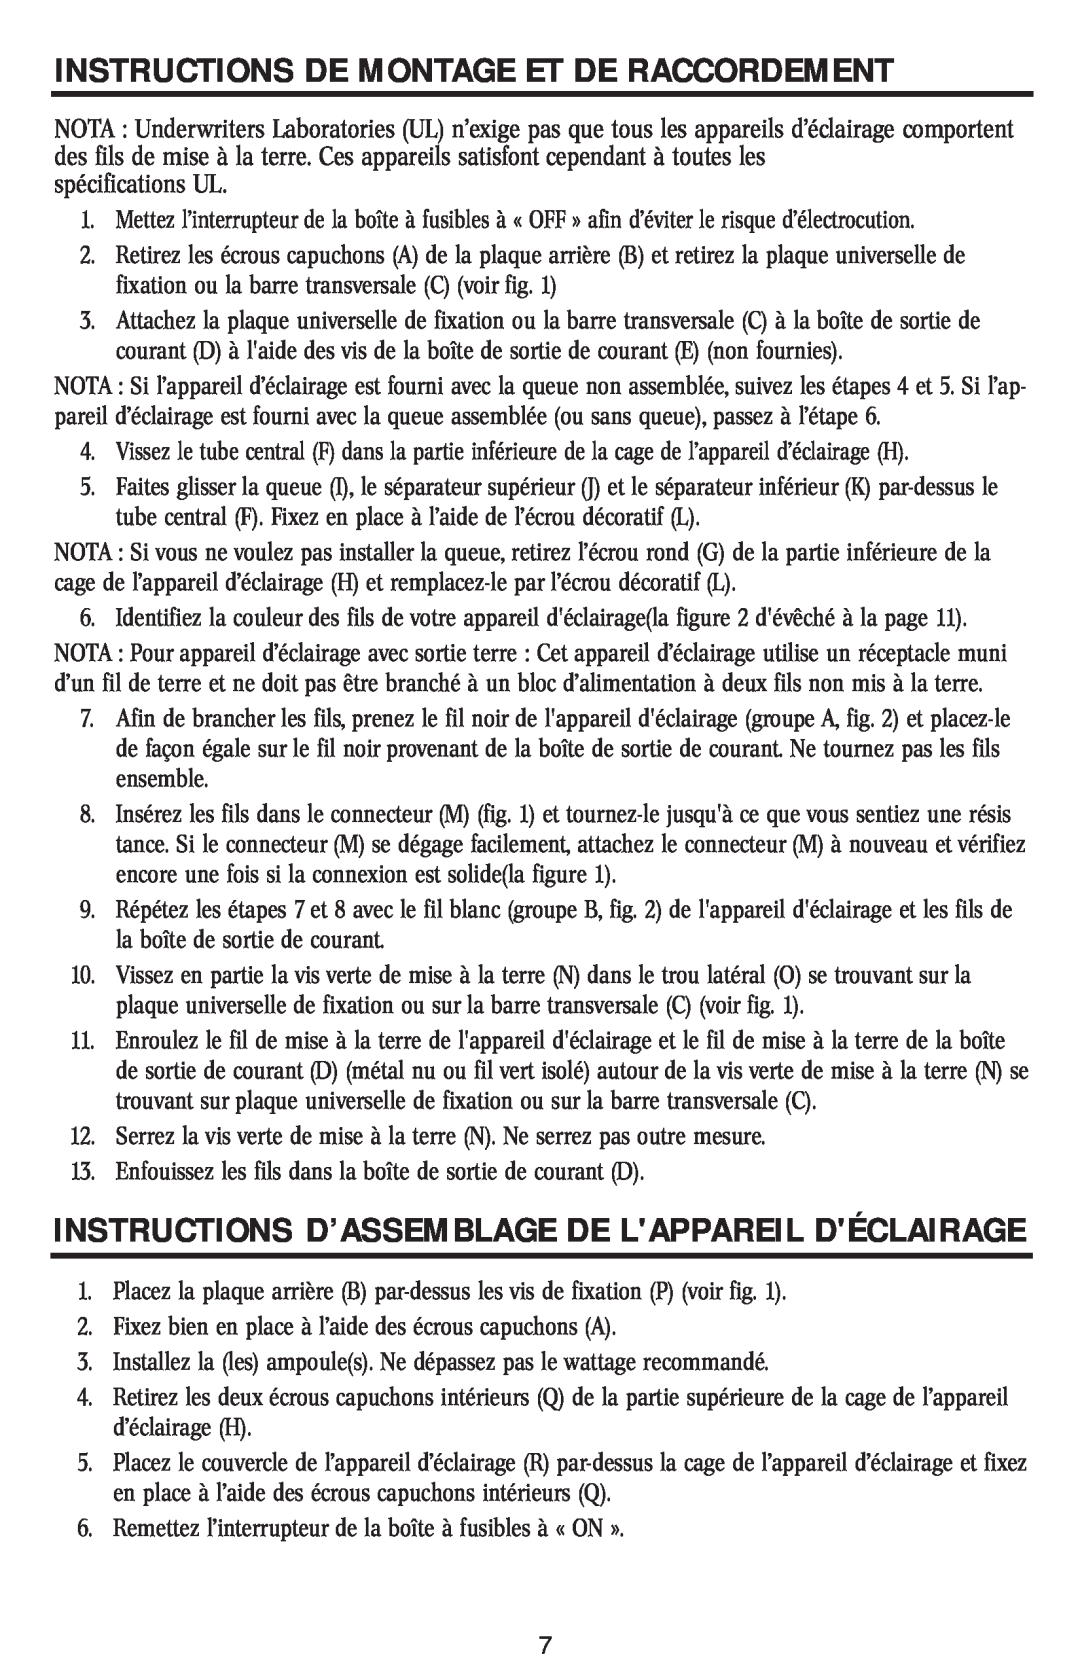 Westinghouse w-031 Instructions D’Assemblage De Lappareil Déclairage, Instructions De Montage Et De Raccordement 